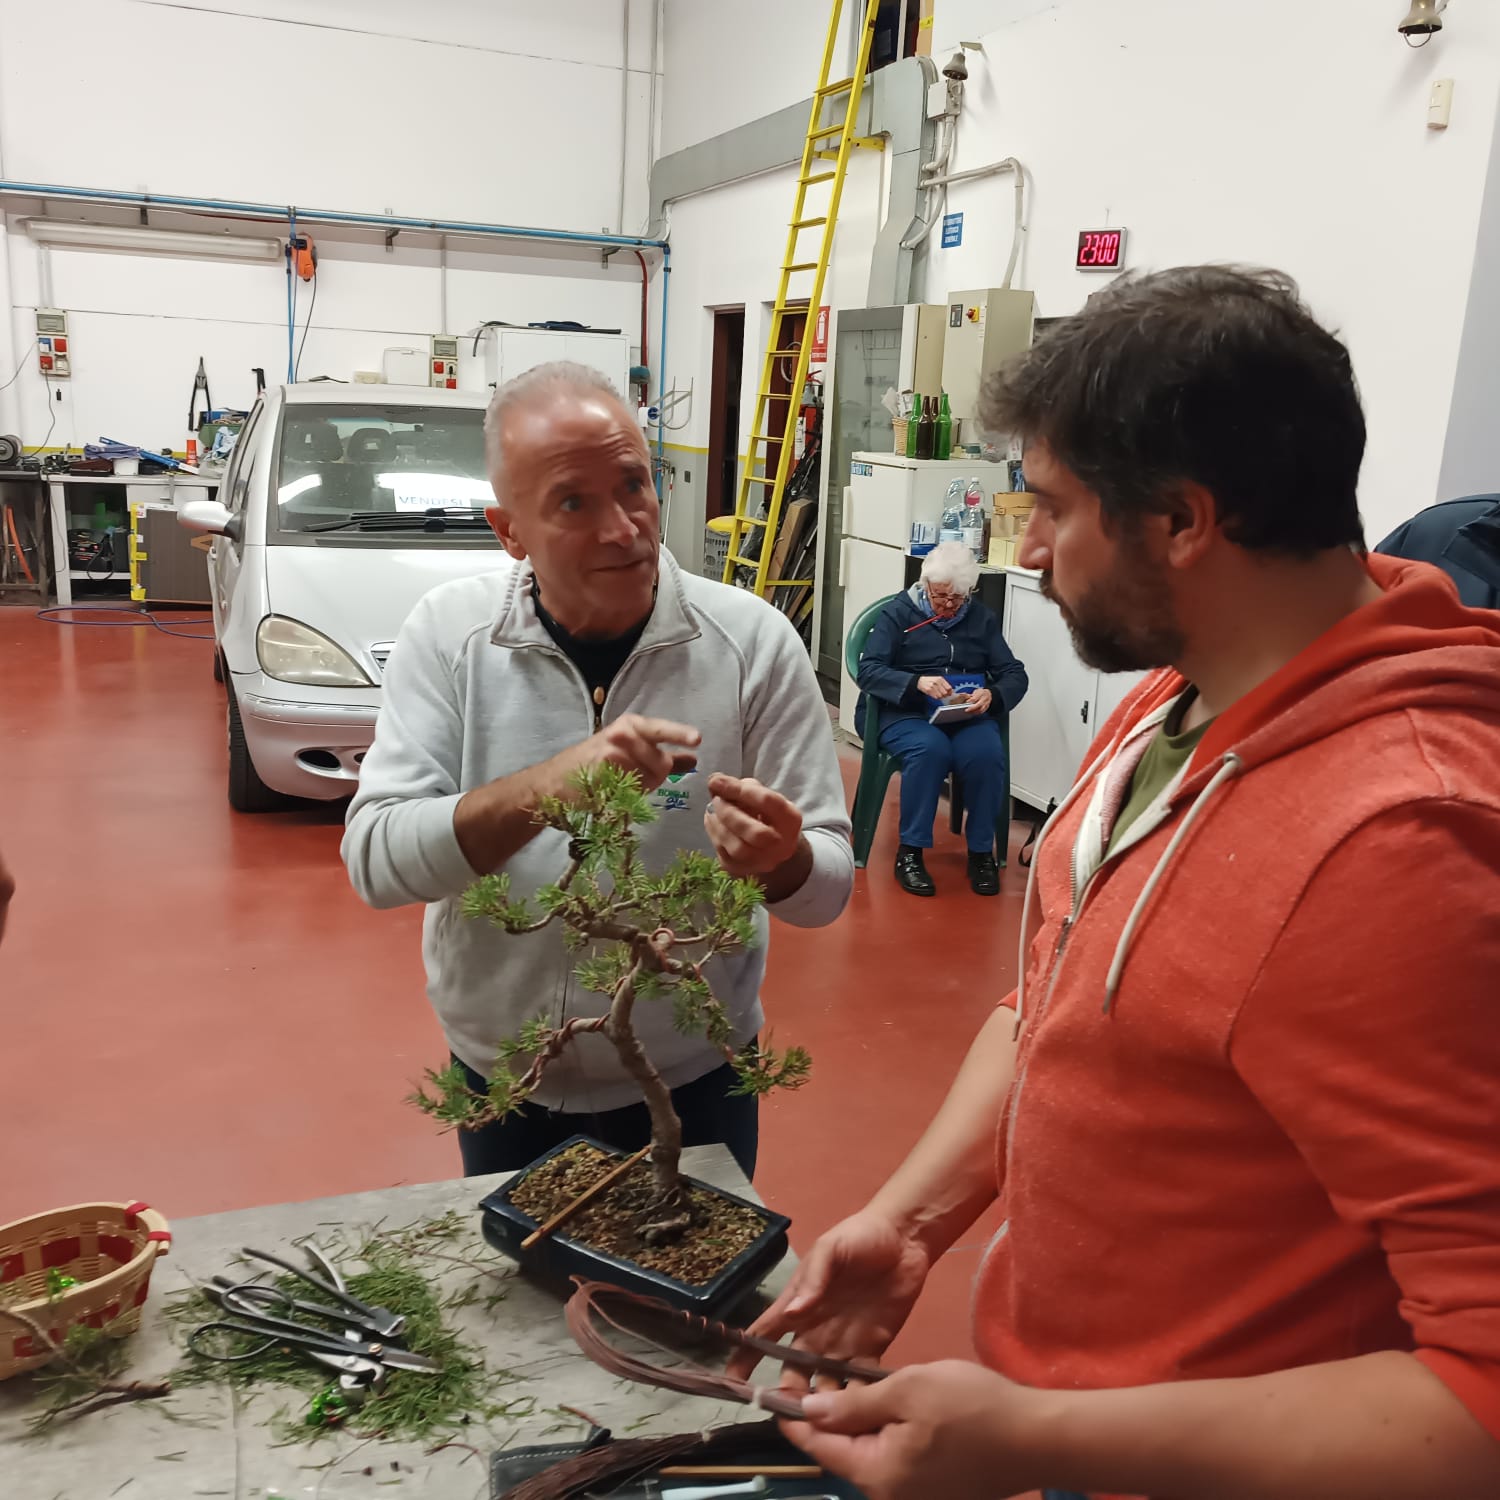 Il maestro bonsai Donato Danisi spiega a un membro del club come lavorare col filo la pianta che si trova in primo piano. La pianta è un pino mugo al quale stanno applicando del filo di rame per dargli una forma più armonica e naturale alt ><